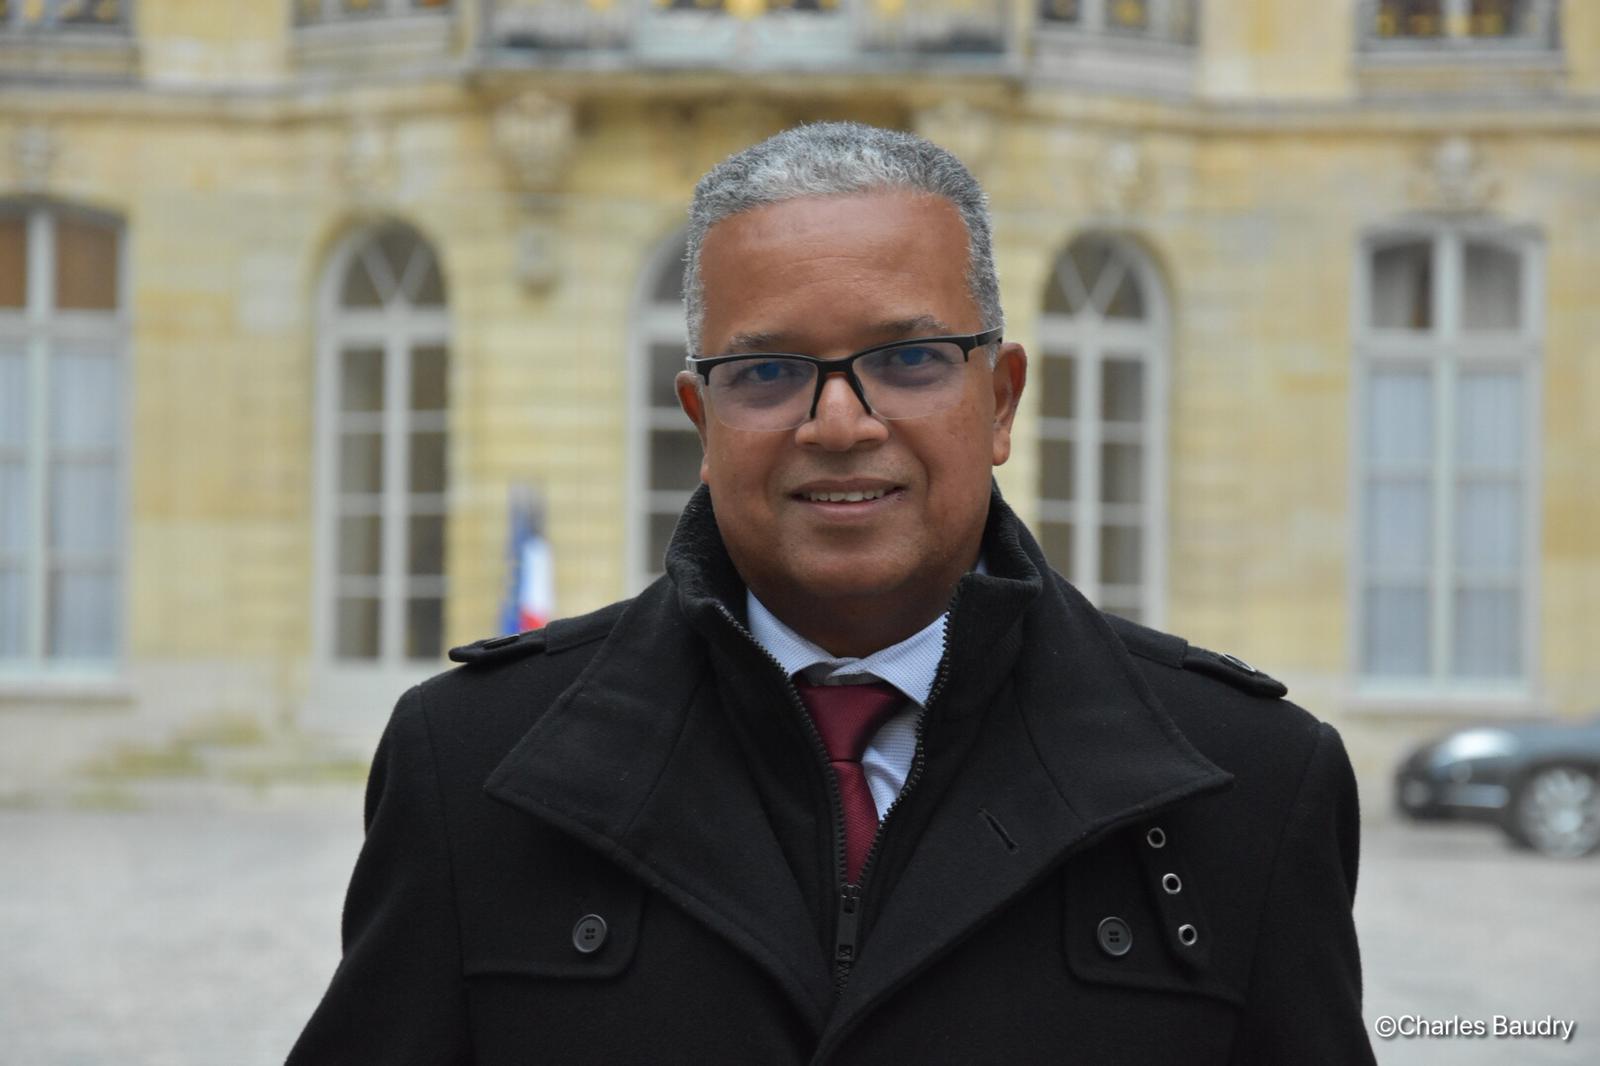 Financement du RSA à La Réunion : Le Premier ministre veut « prendre le temps de bien étudier le dossier » assure Cyrille Melchior